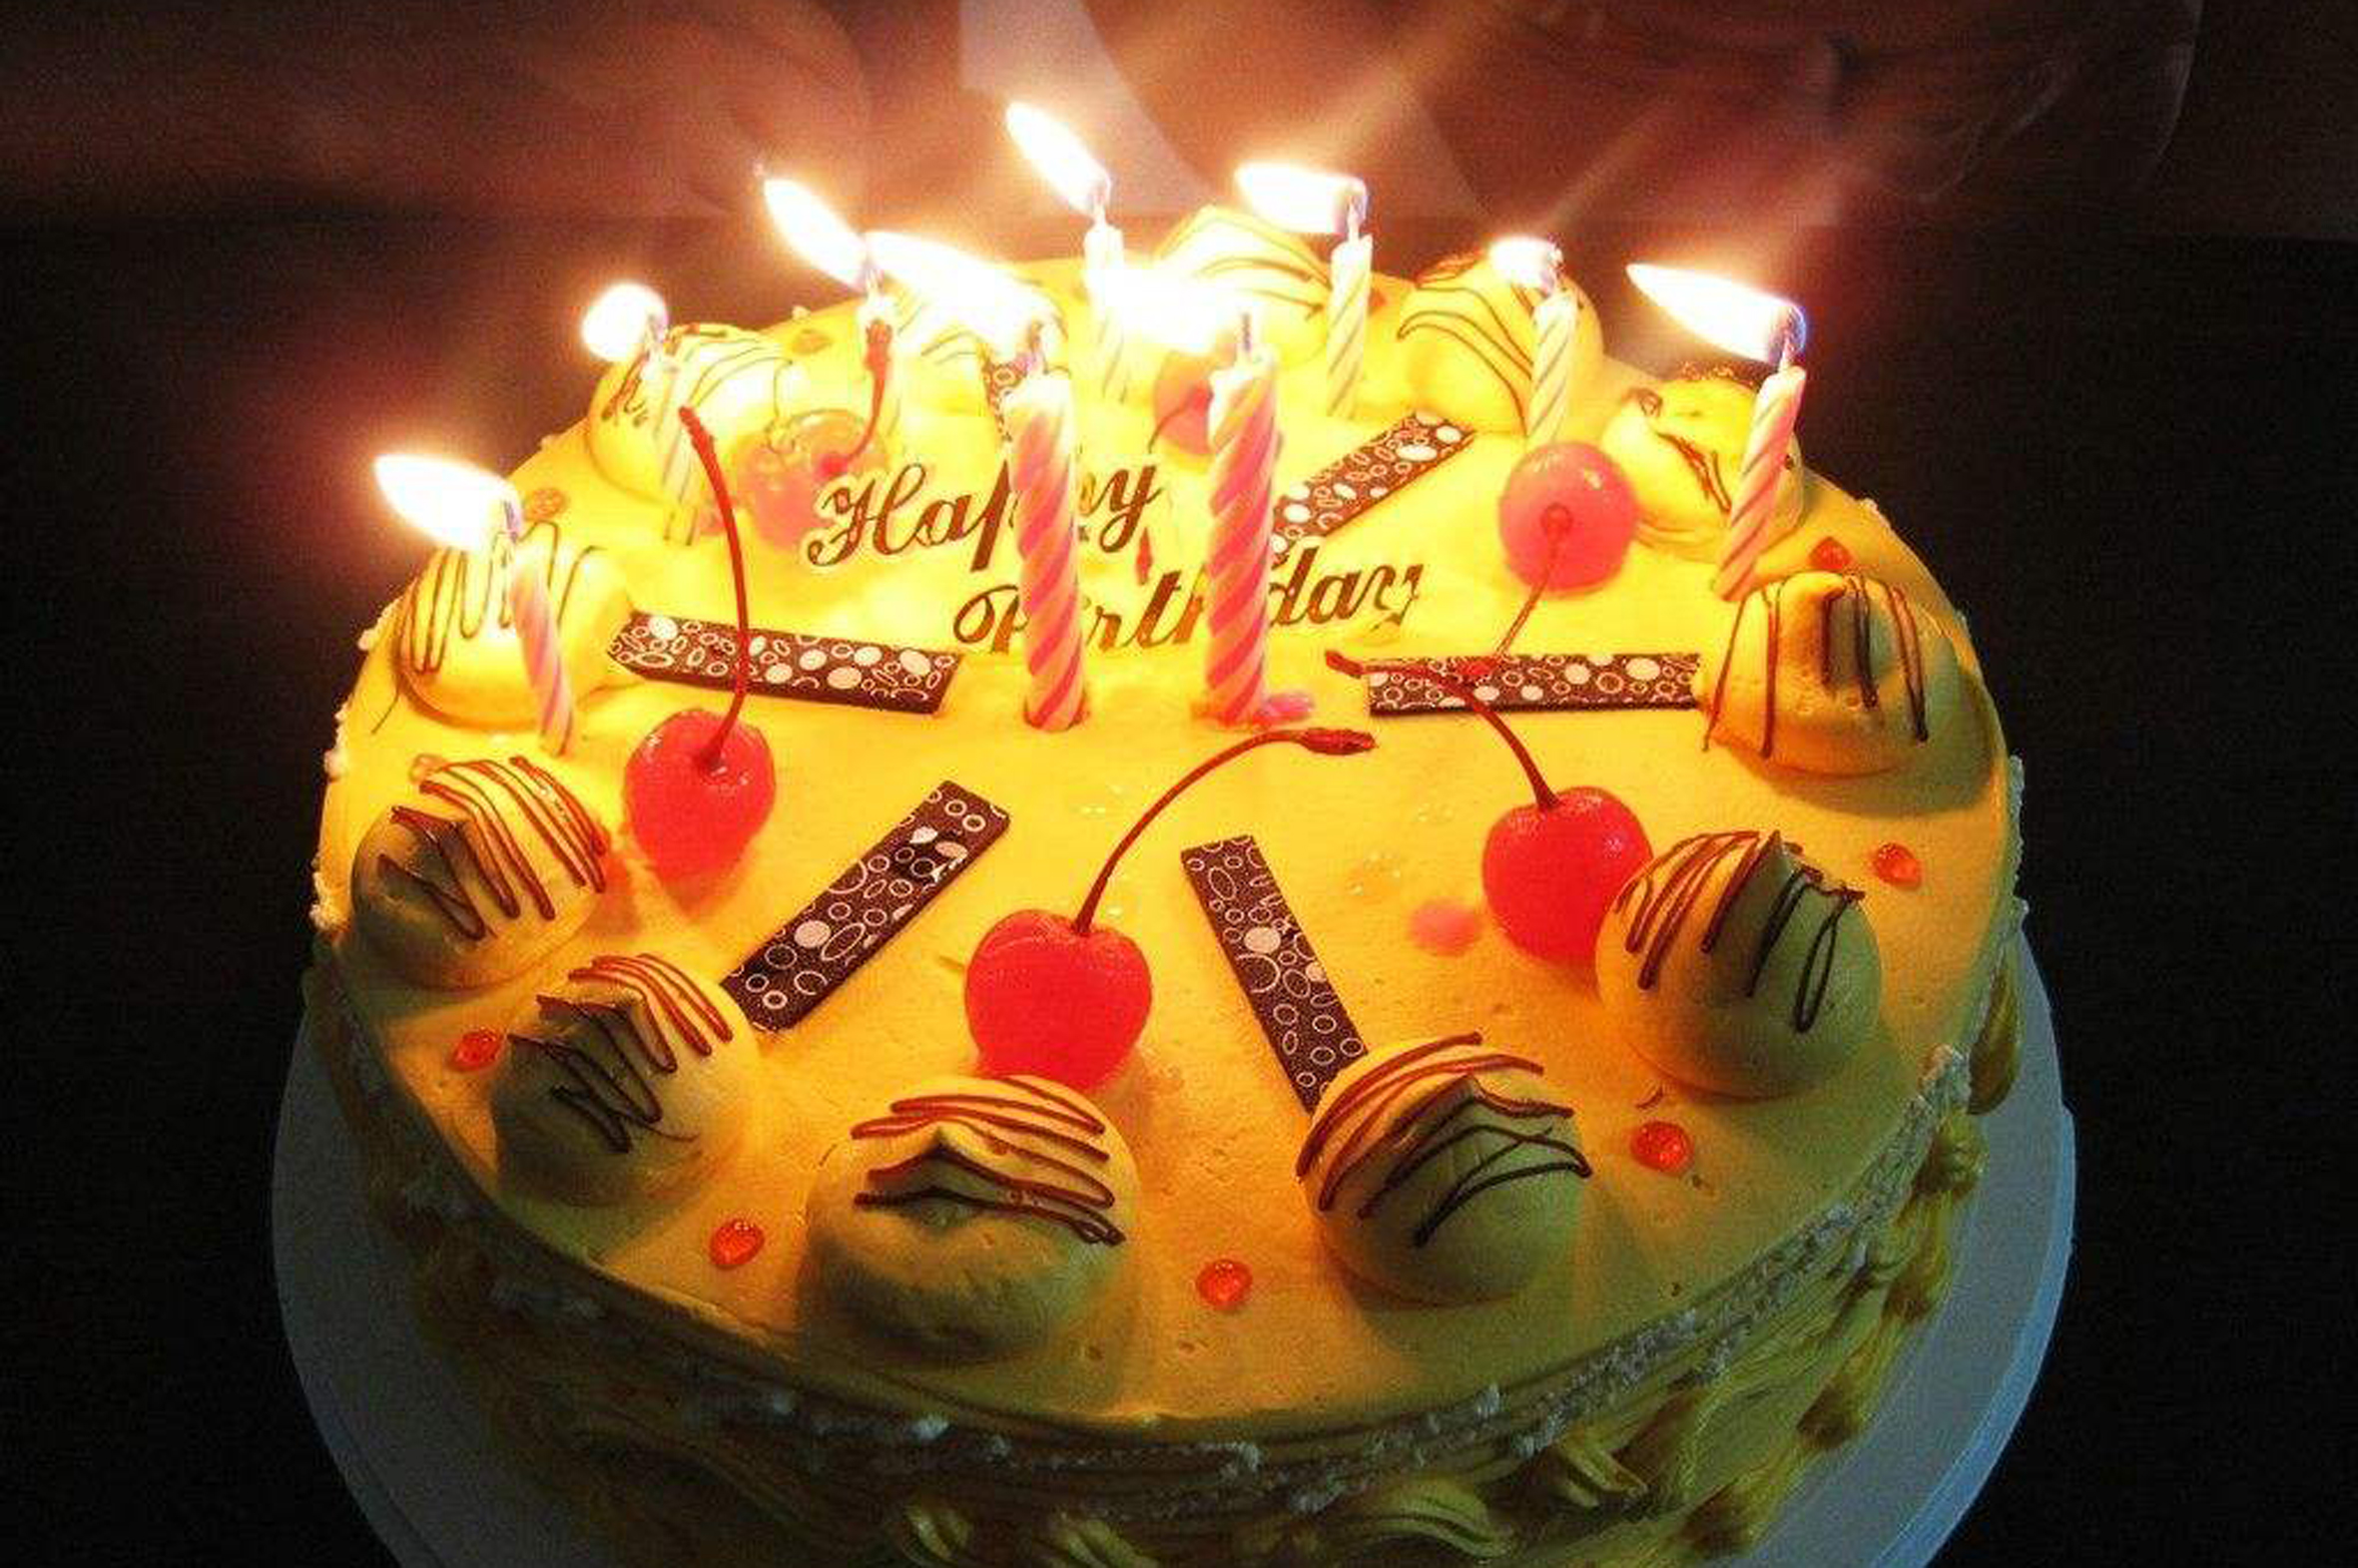 冷知识:过生日时为什么要吃蛋糕,还有吹蜡烛呢?